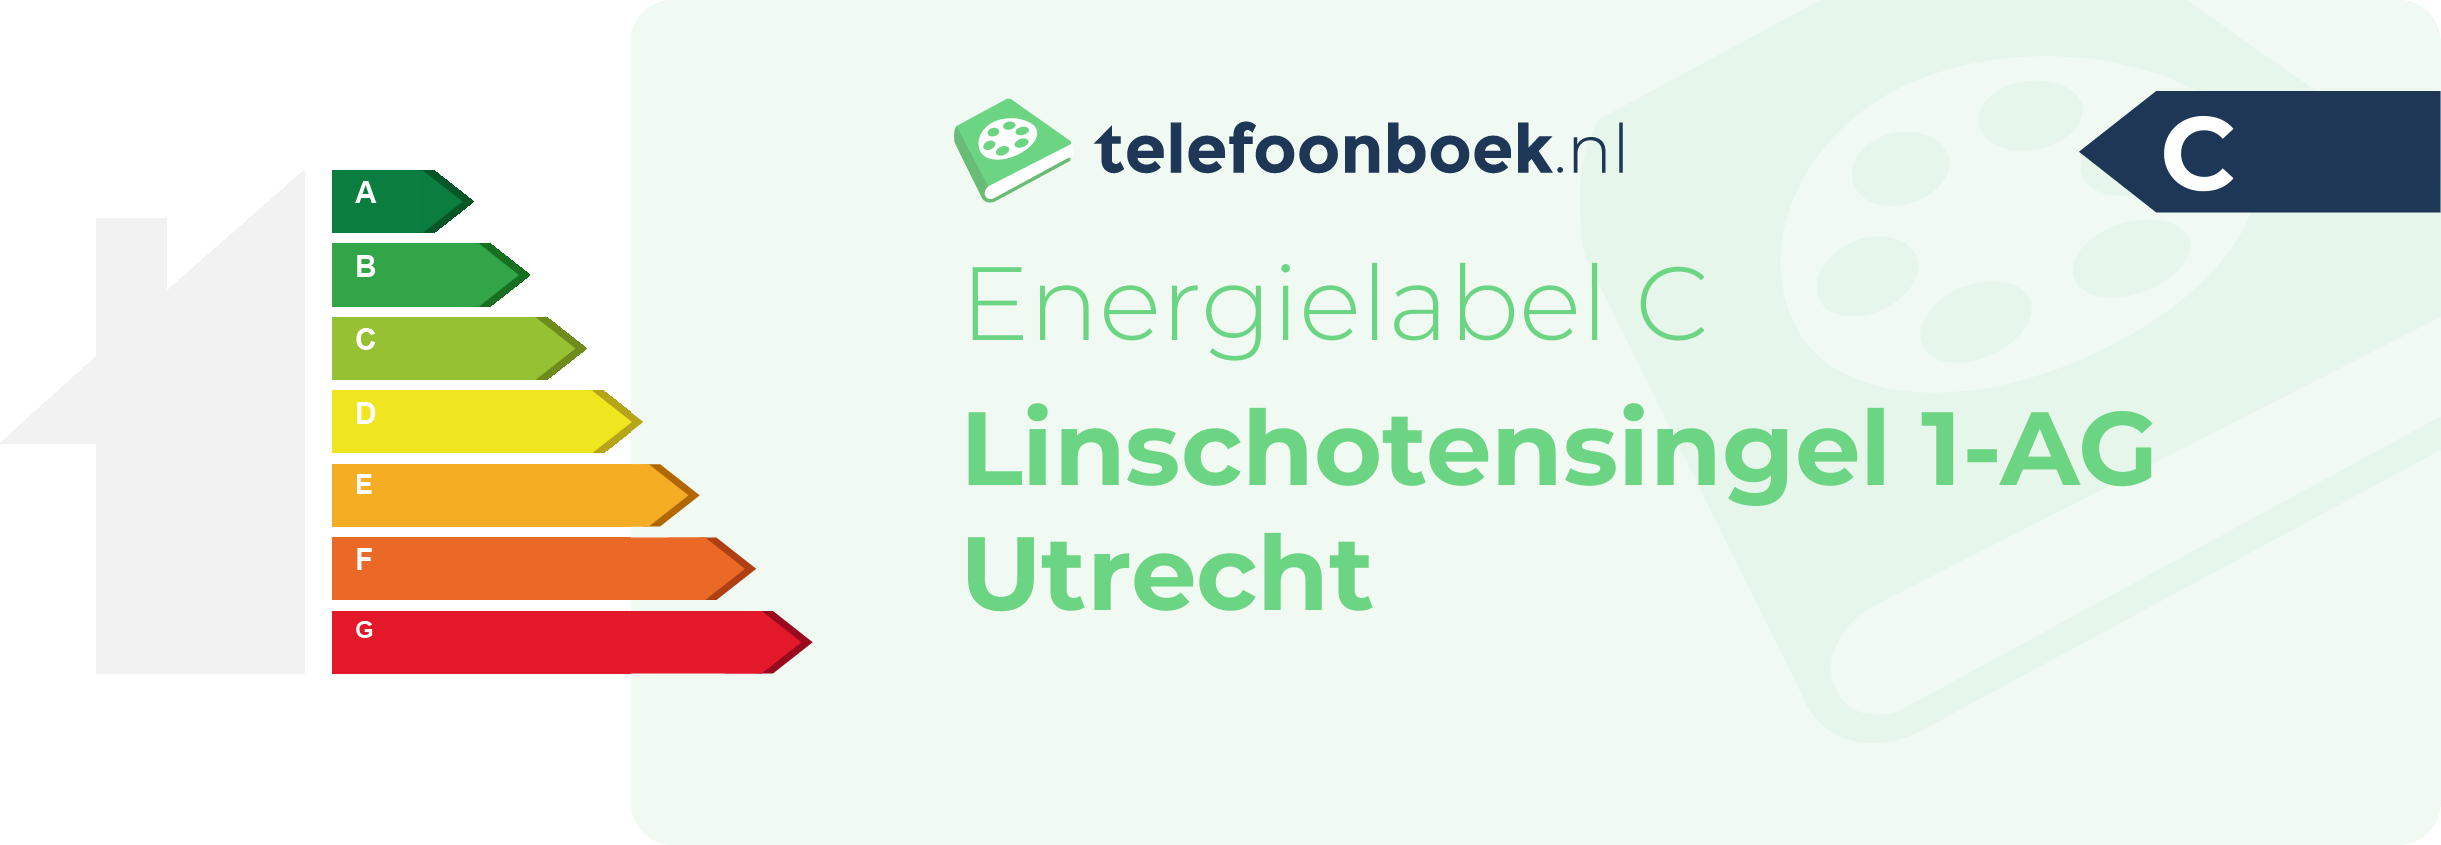 Energielabel Linschotensingel 1-AG Utrecht